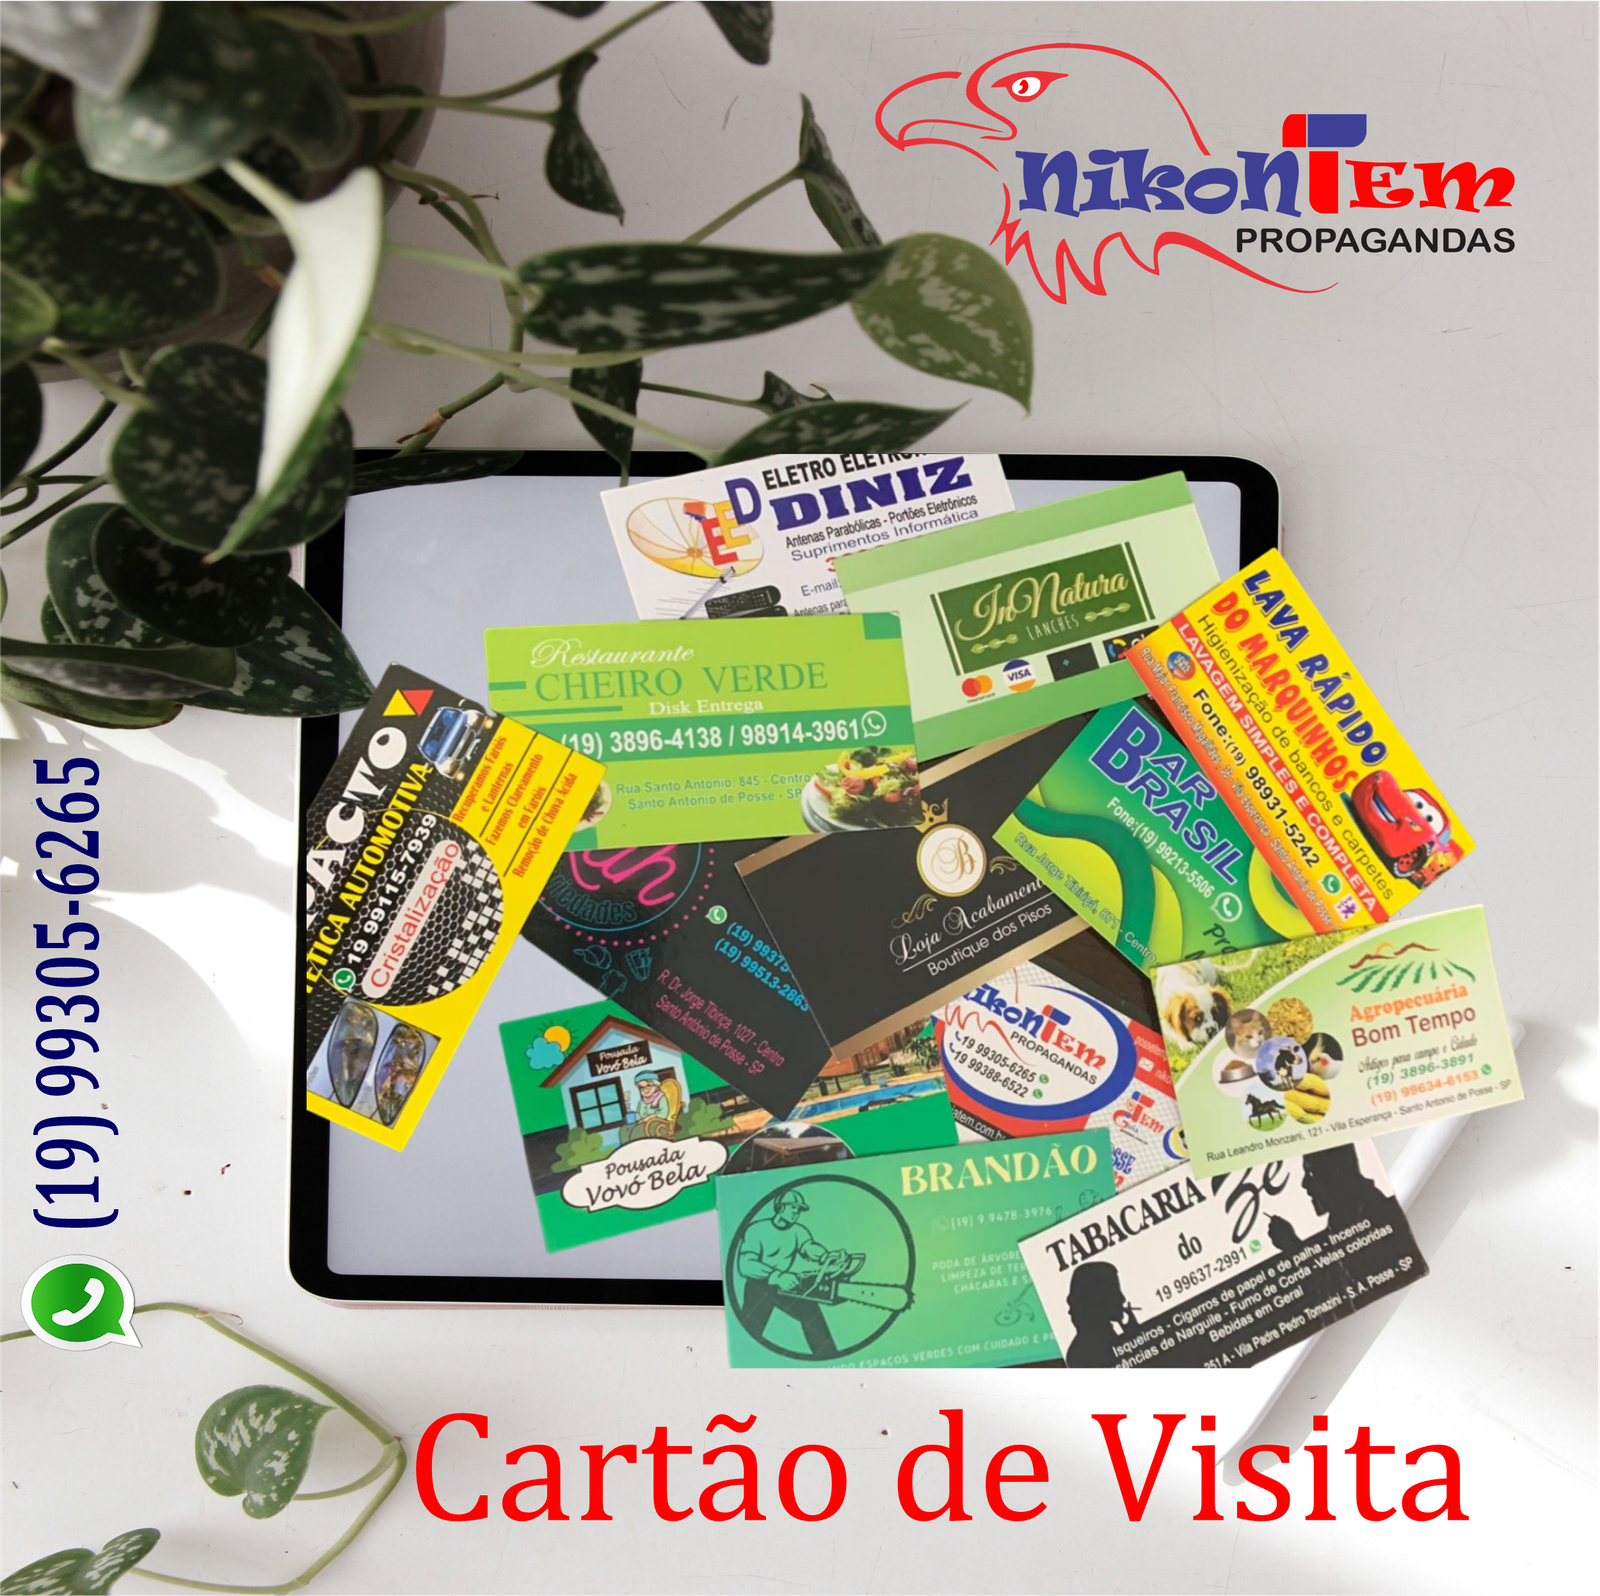 NikonTem - Cartão de Visita